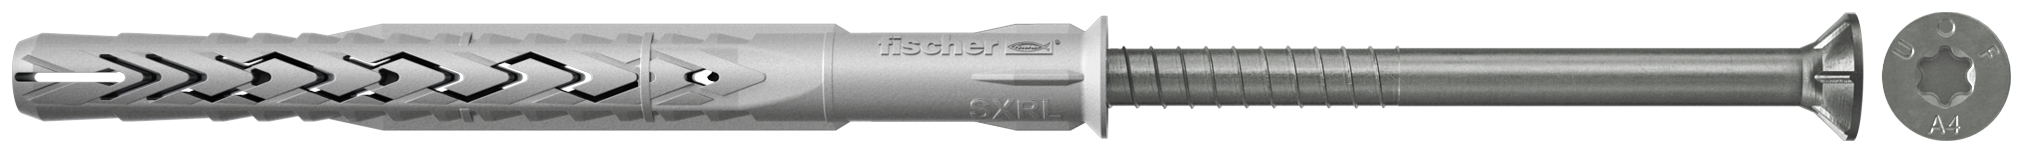 fischer Tasselli prolungati SXRL 10X100 T A4 (1 Pz.) Tassello prolungato in nylon con marcatura CE con vite premontata in acciaio inox A4, T.S.P. impronta torx.